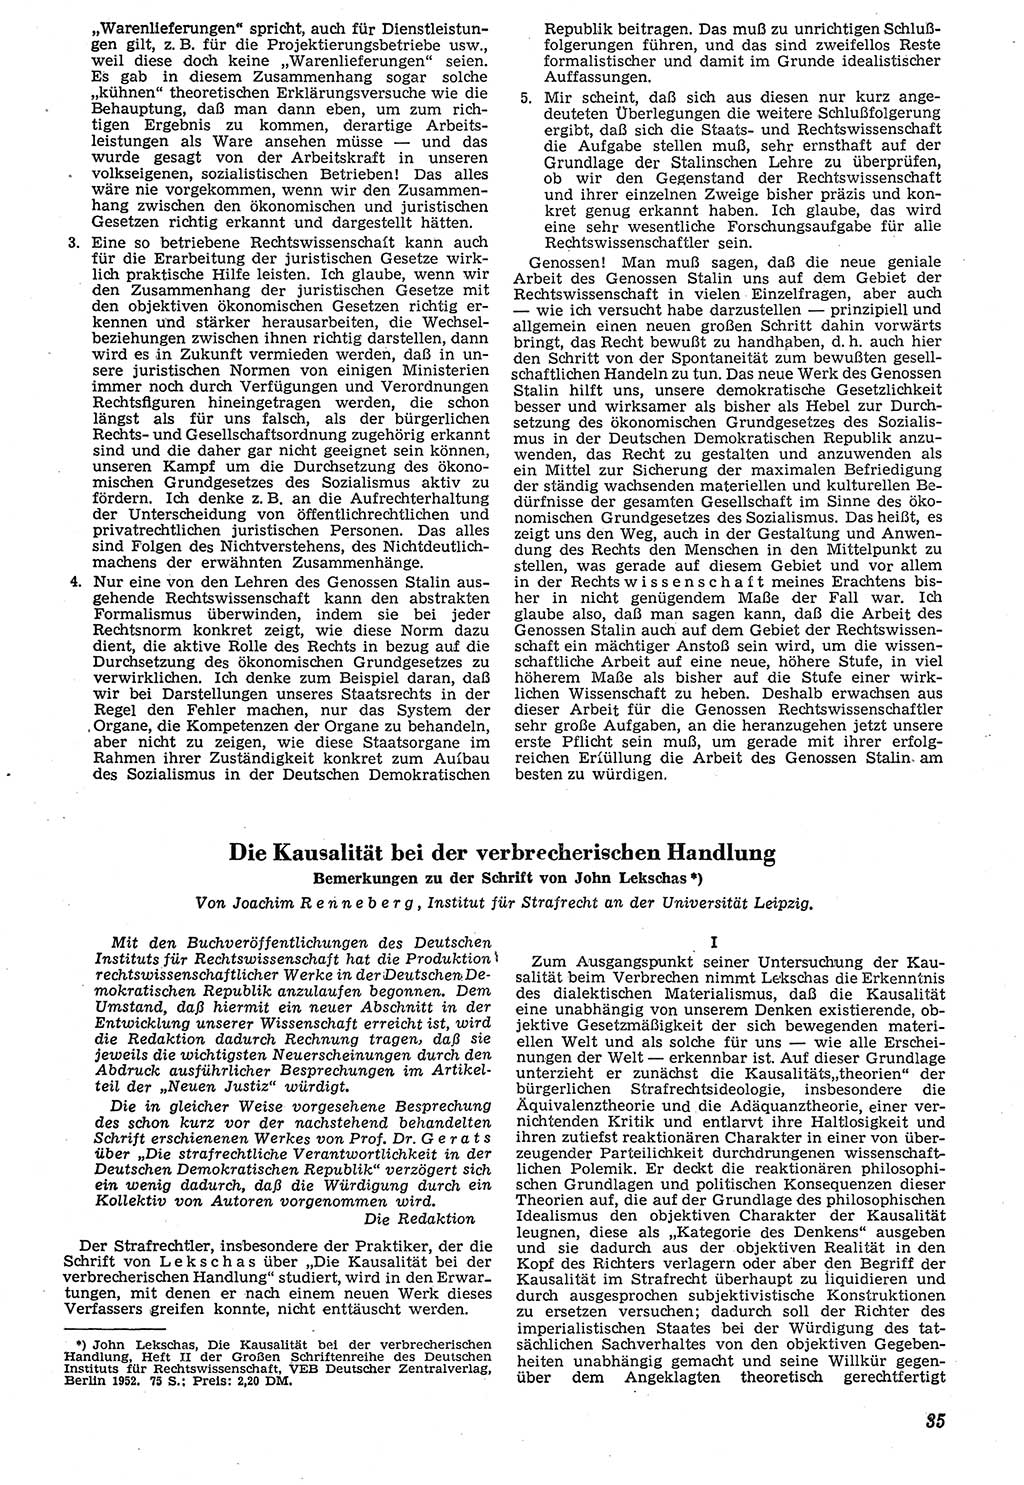 Neue Justiz (NJ), Zeitschrift für Recht und Rechtswissenschaft [Deutsche Demokratische Republik (DDR)], 7. Jahrgang 1953, Seite 35 (NJ DDR 1953, S. 35)